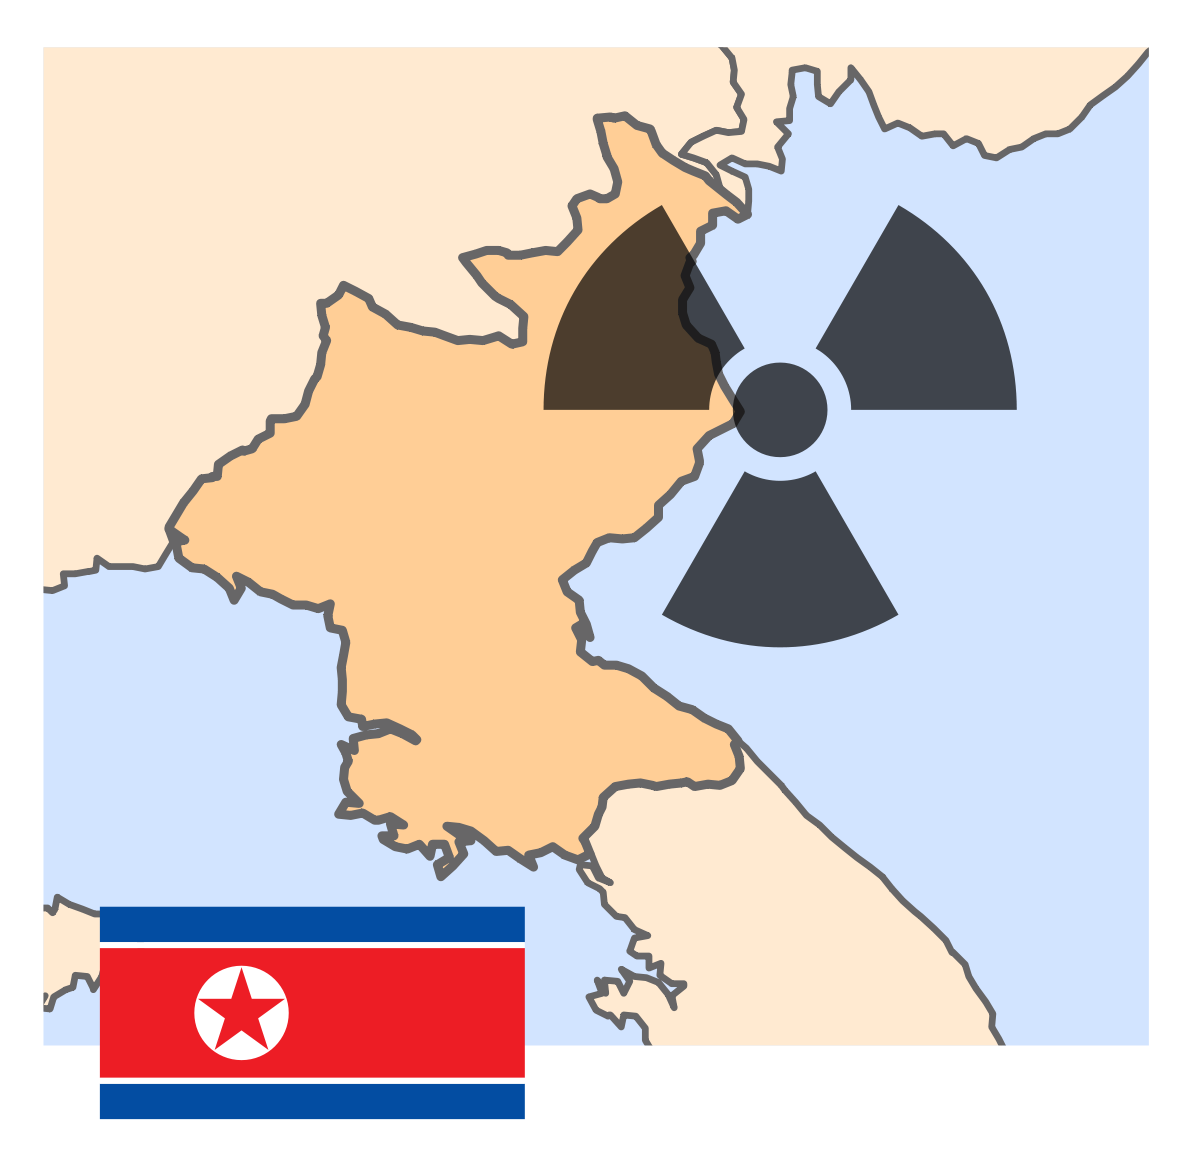 2013年に北朝鮮が打ち上げた人工衛星「光明星3号2号機」への抗議でWEBサイト「わが民族同士」をハッキング